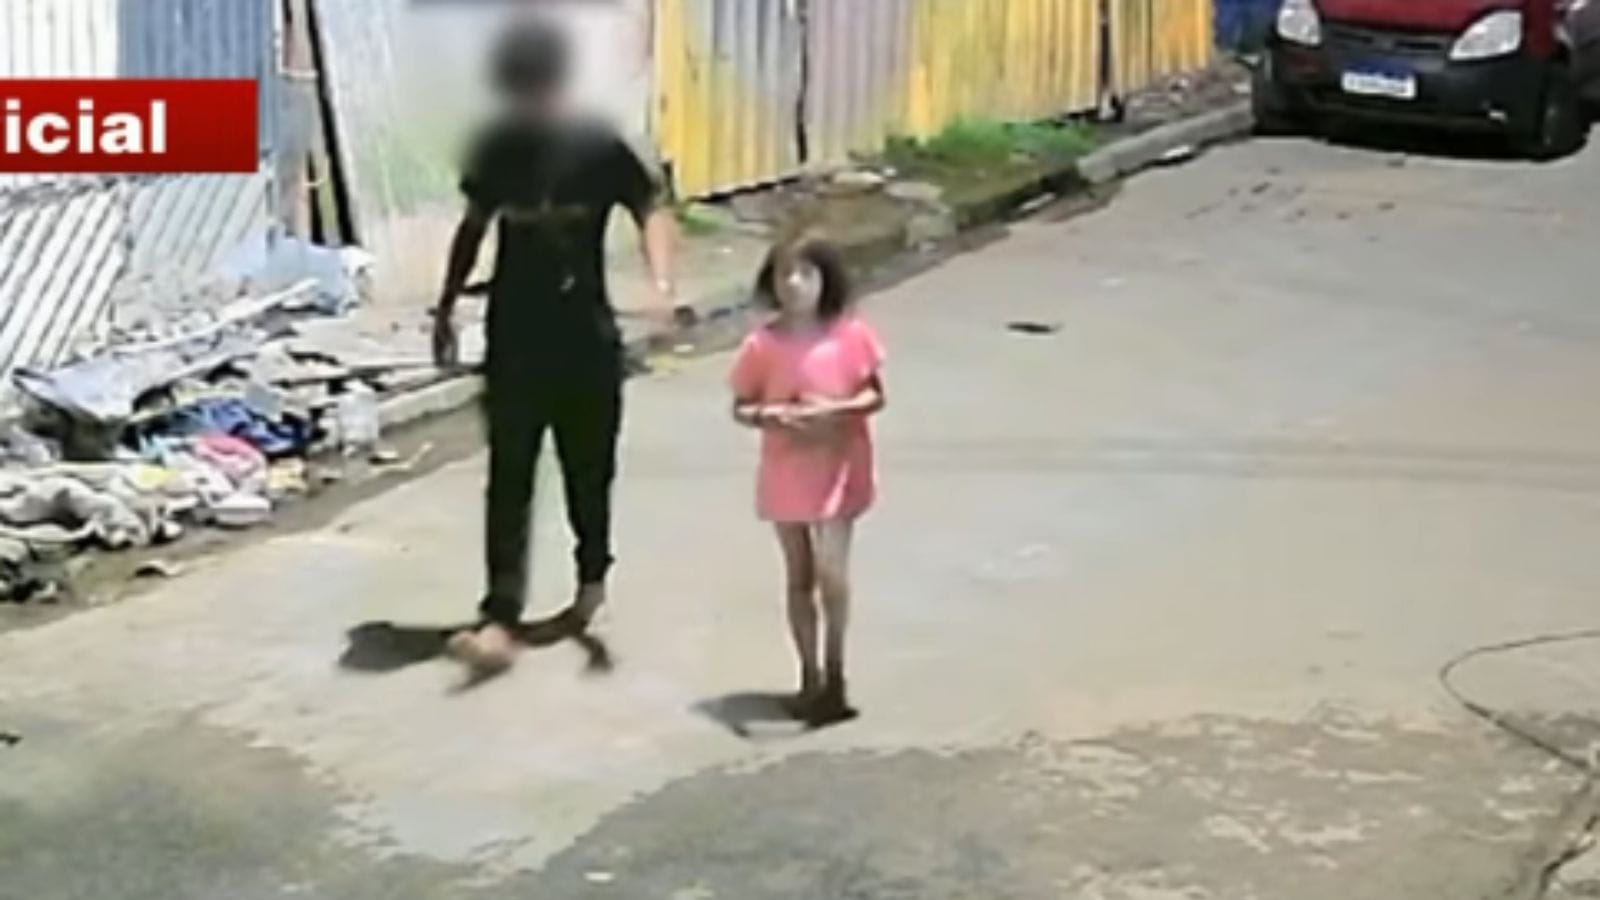 Revoltante: criança de 8 anos é filmada segurando arma e usando droga em  baile de facção - REDAÇÃO MT